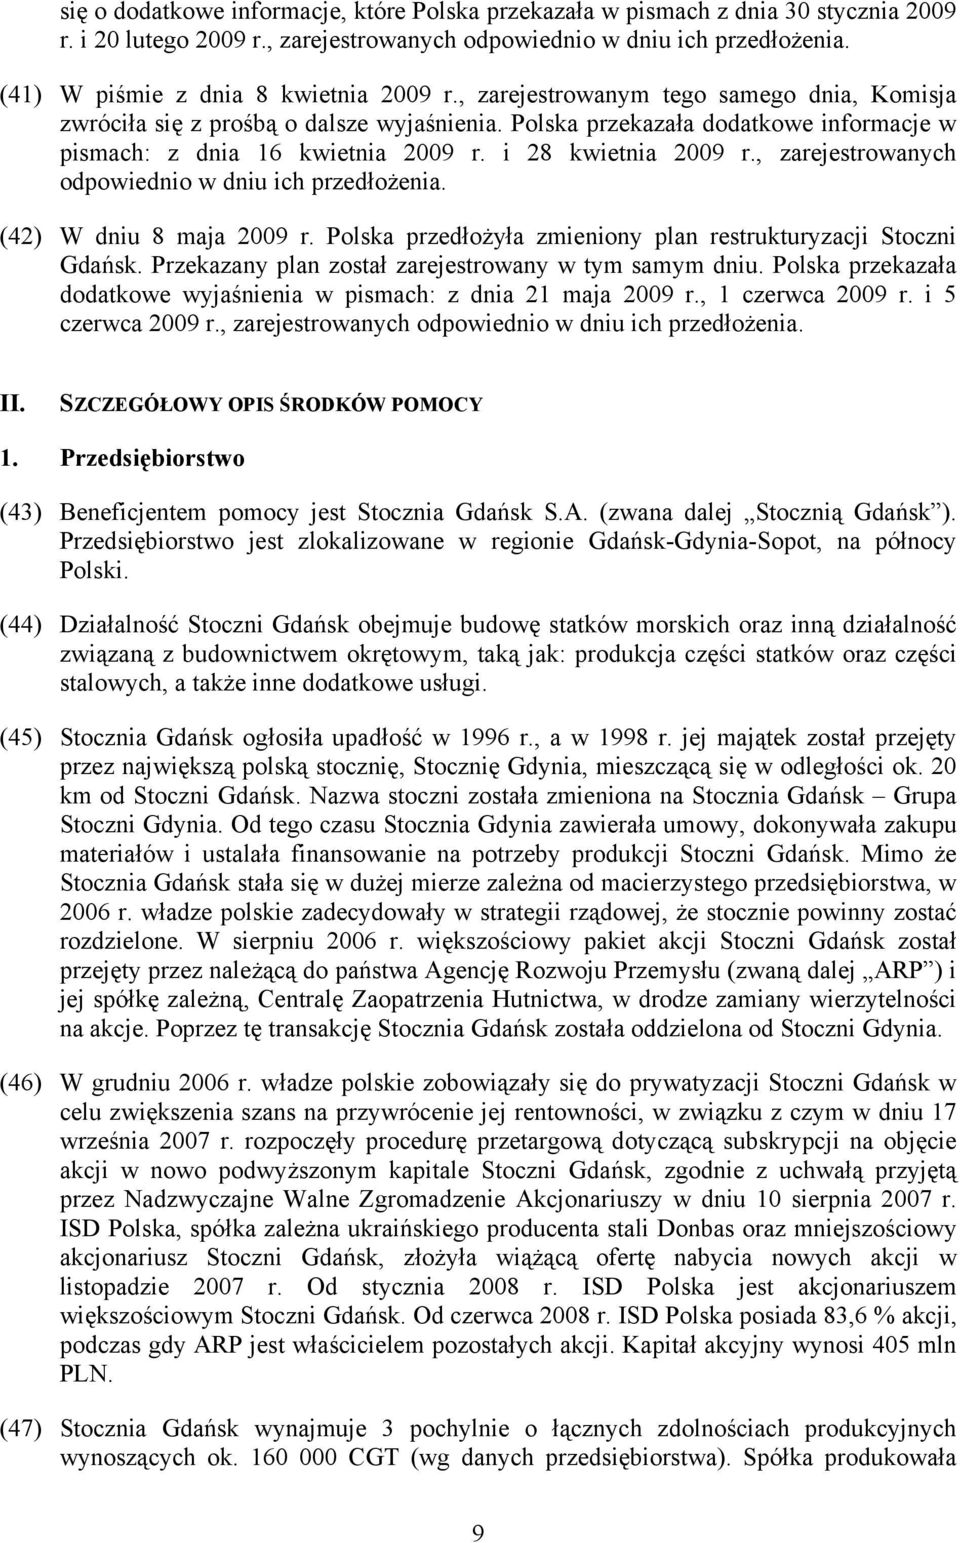 Polska przekazała dodatkowe informacje w pismach: z dnia 16 kwietnia 2009 r. i 28 kwietnia 2009 r., zarejestrowanych odpowiednio w dniu ich przedłożenia. (42) W dniu 8 maja 2009 r.